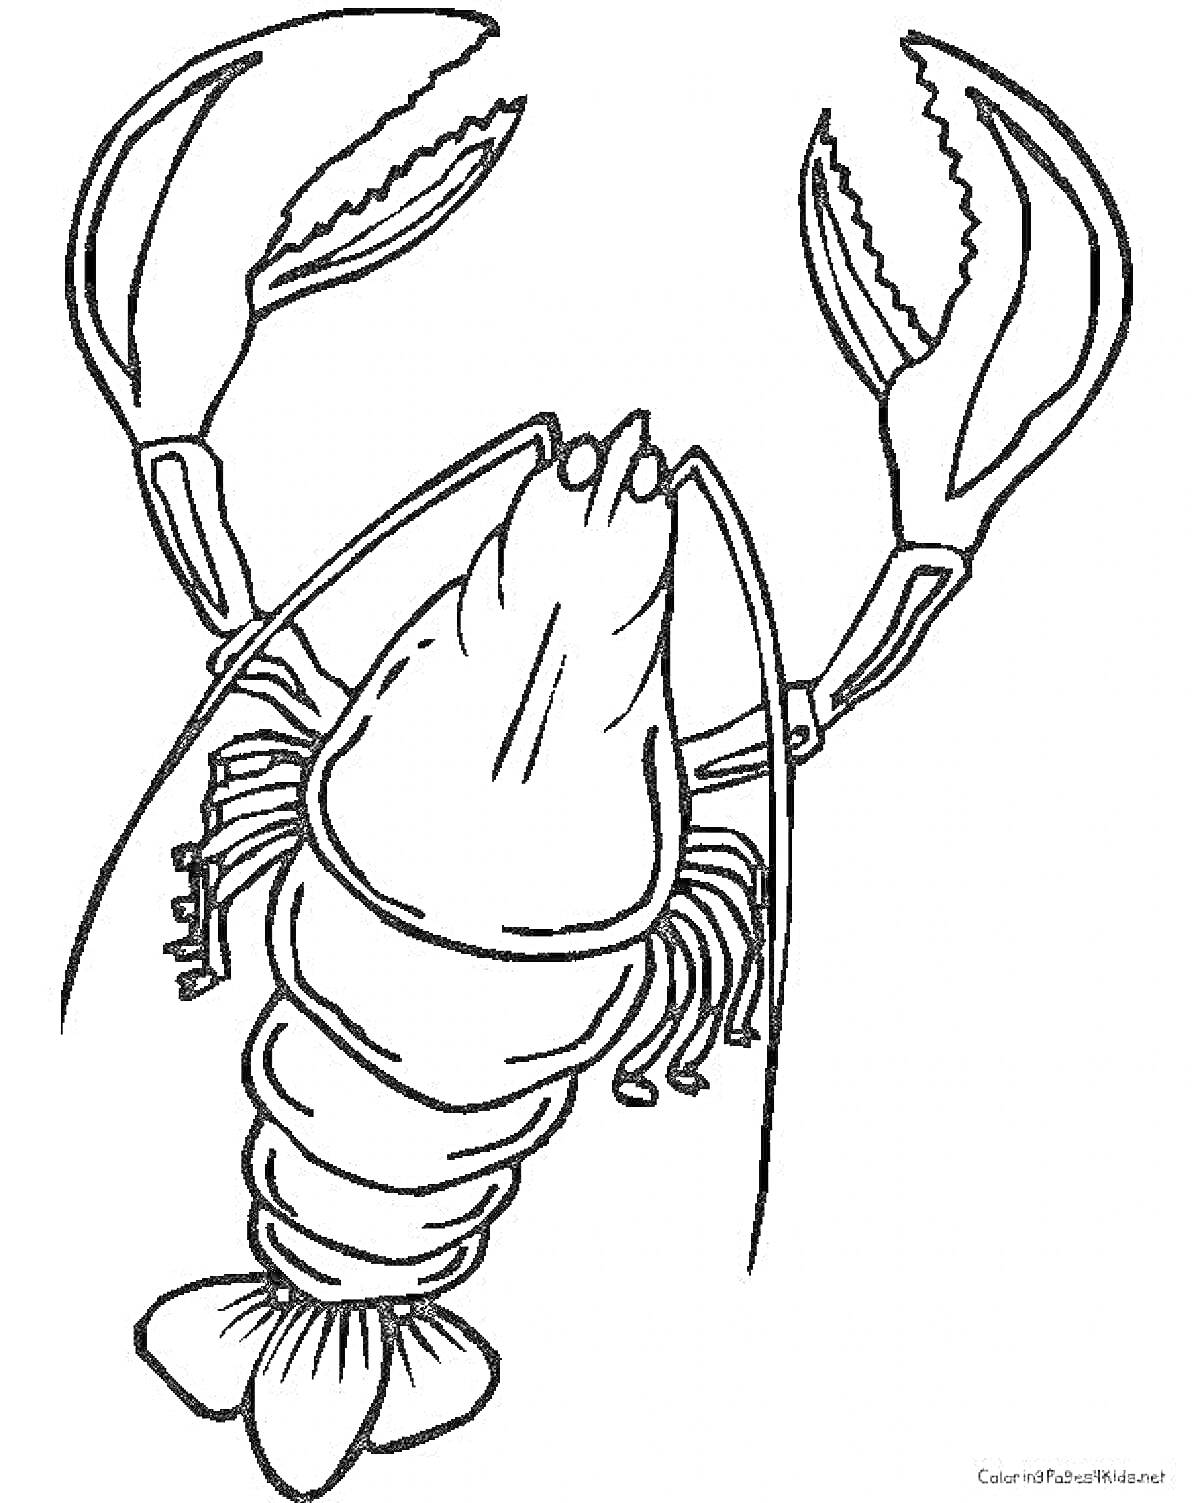 Раскраска Раскраска с изображением лангуста с большими клешнями и детализированным телом